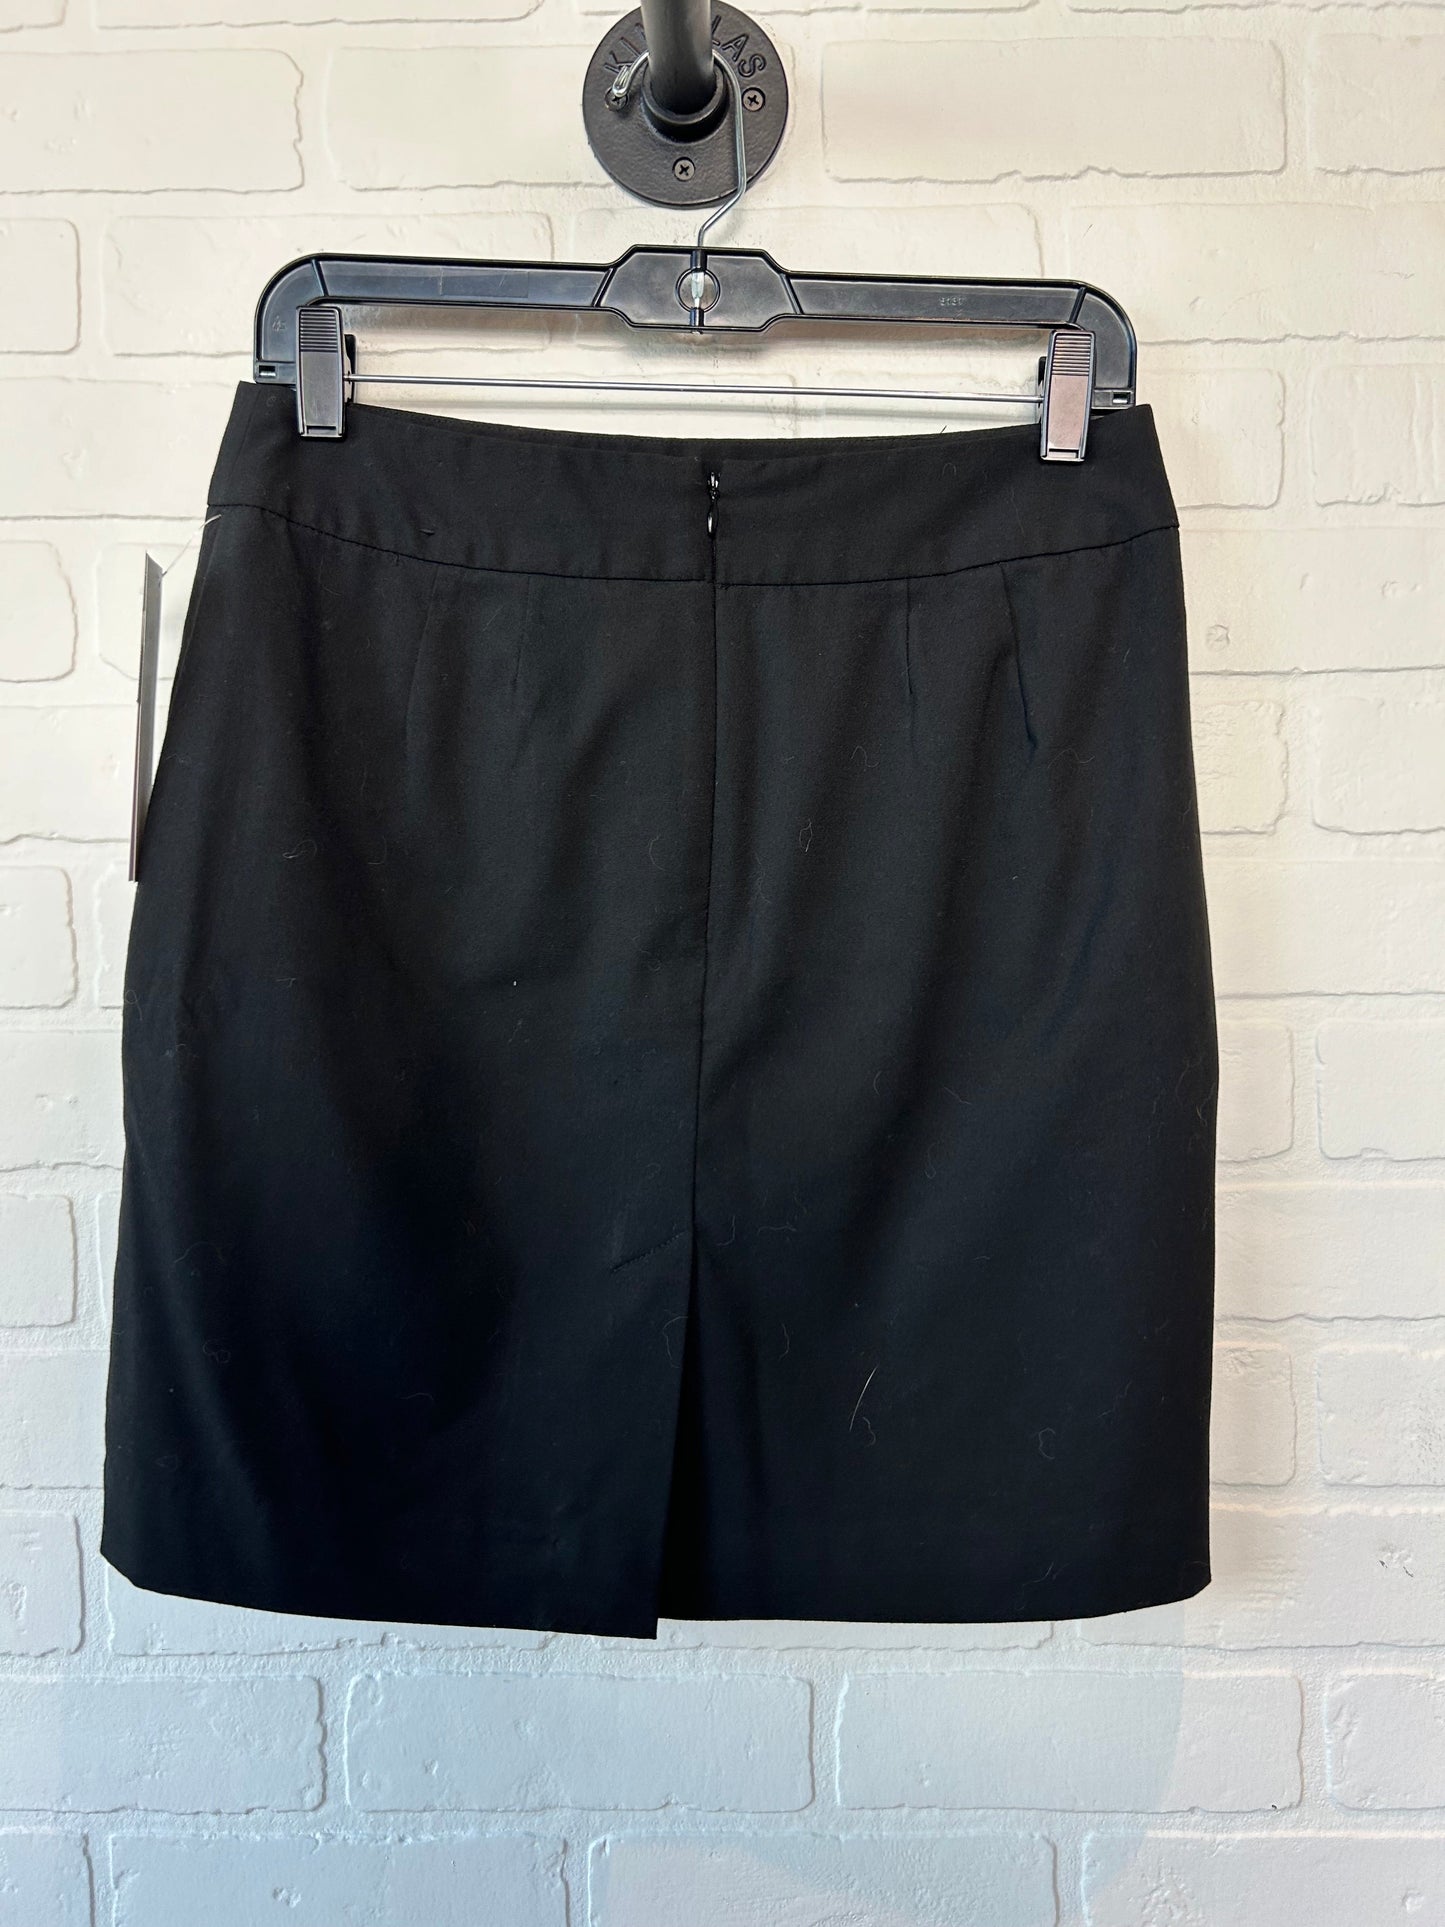 Black Skirt Mini & Short Banana Republic, Size 4petite